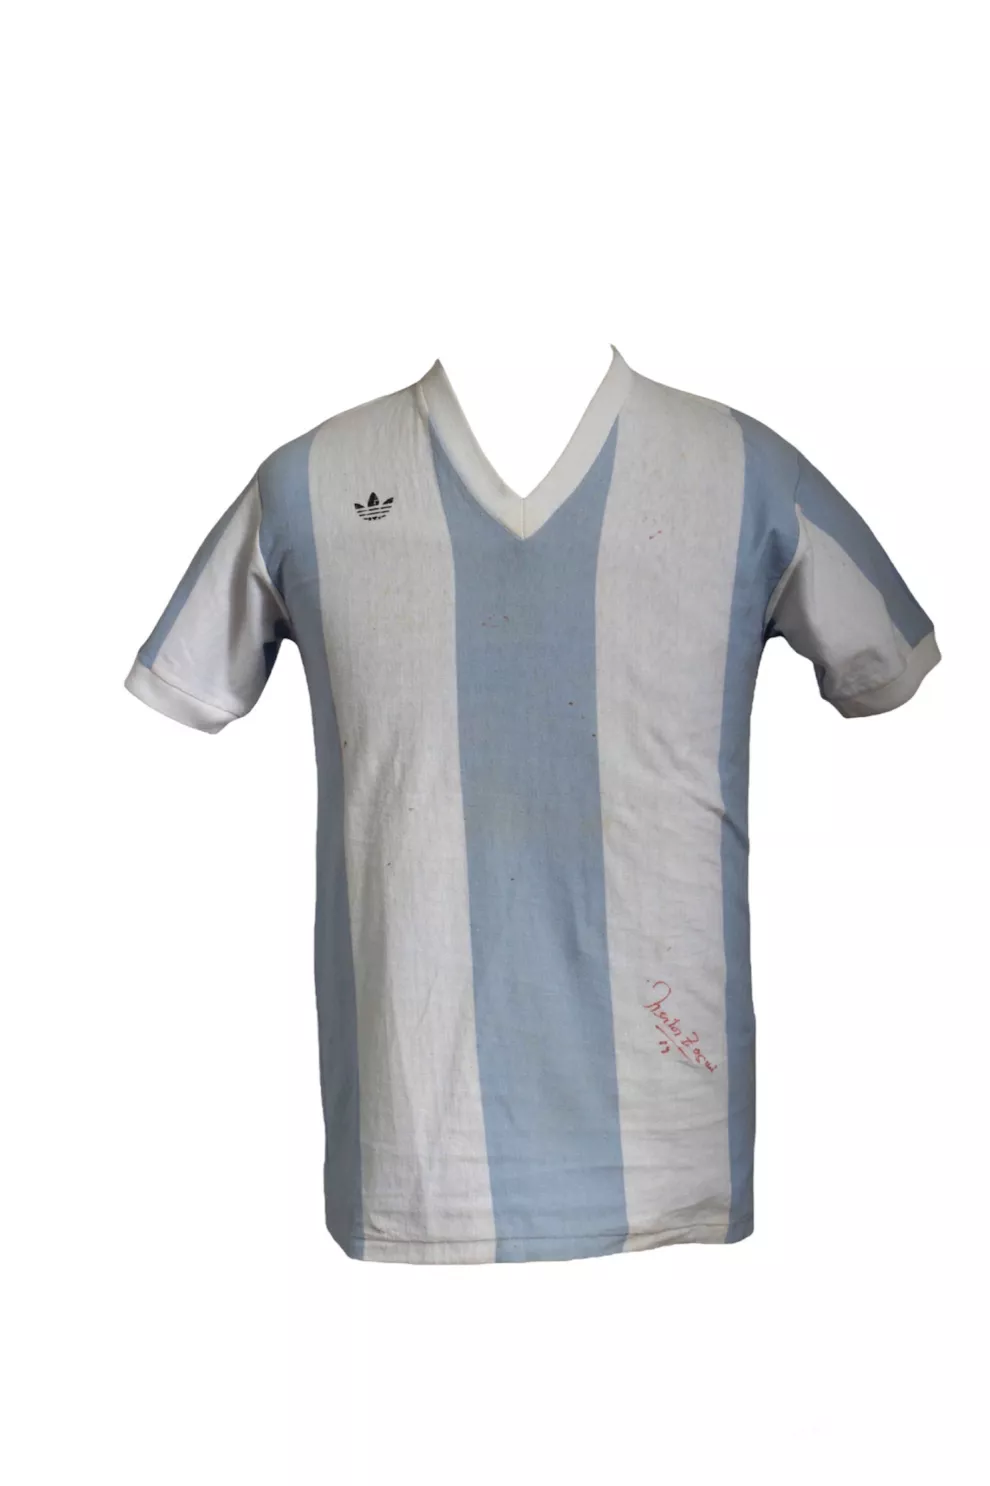 Camiseta de la Selección argentina en 1974.